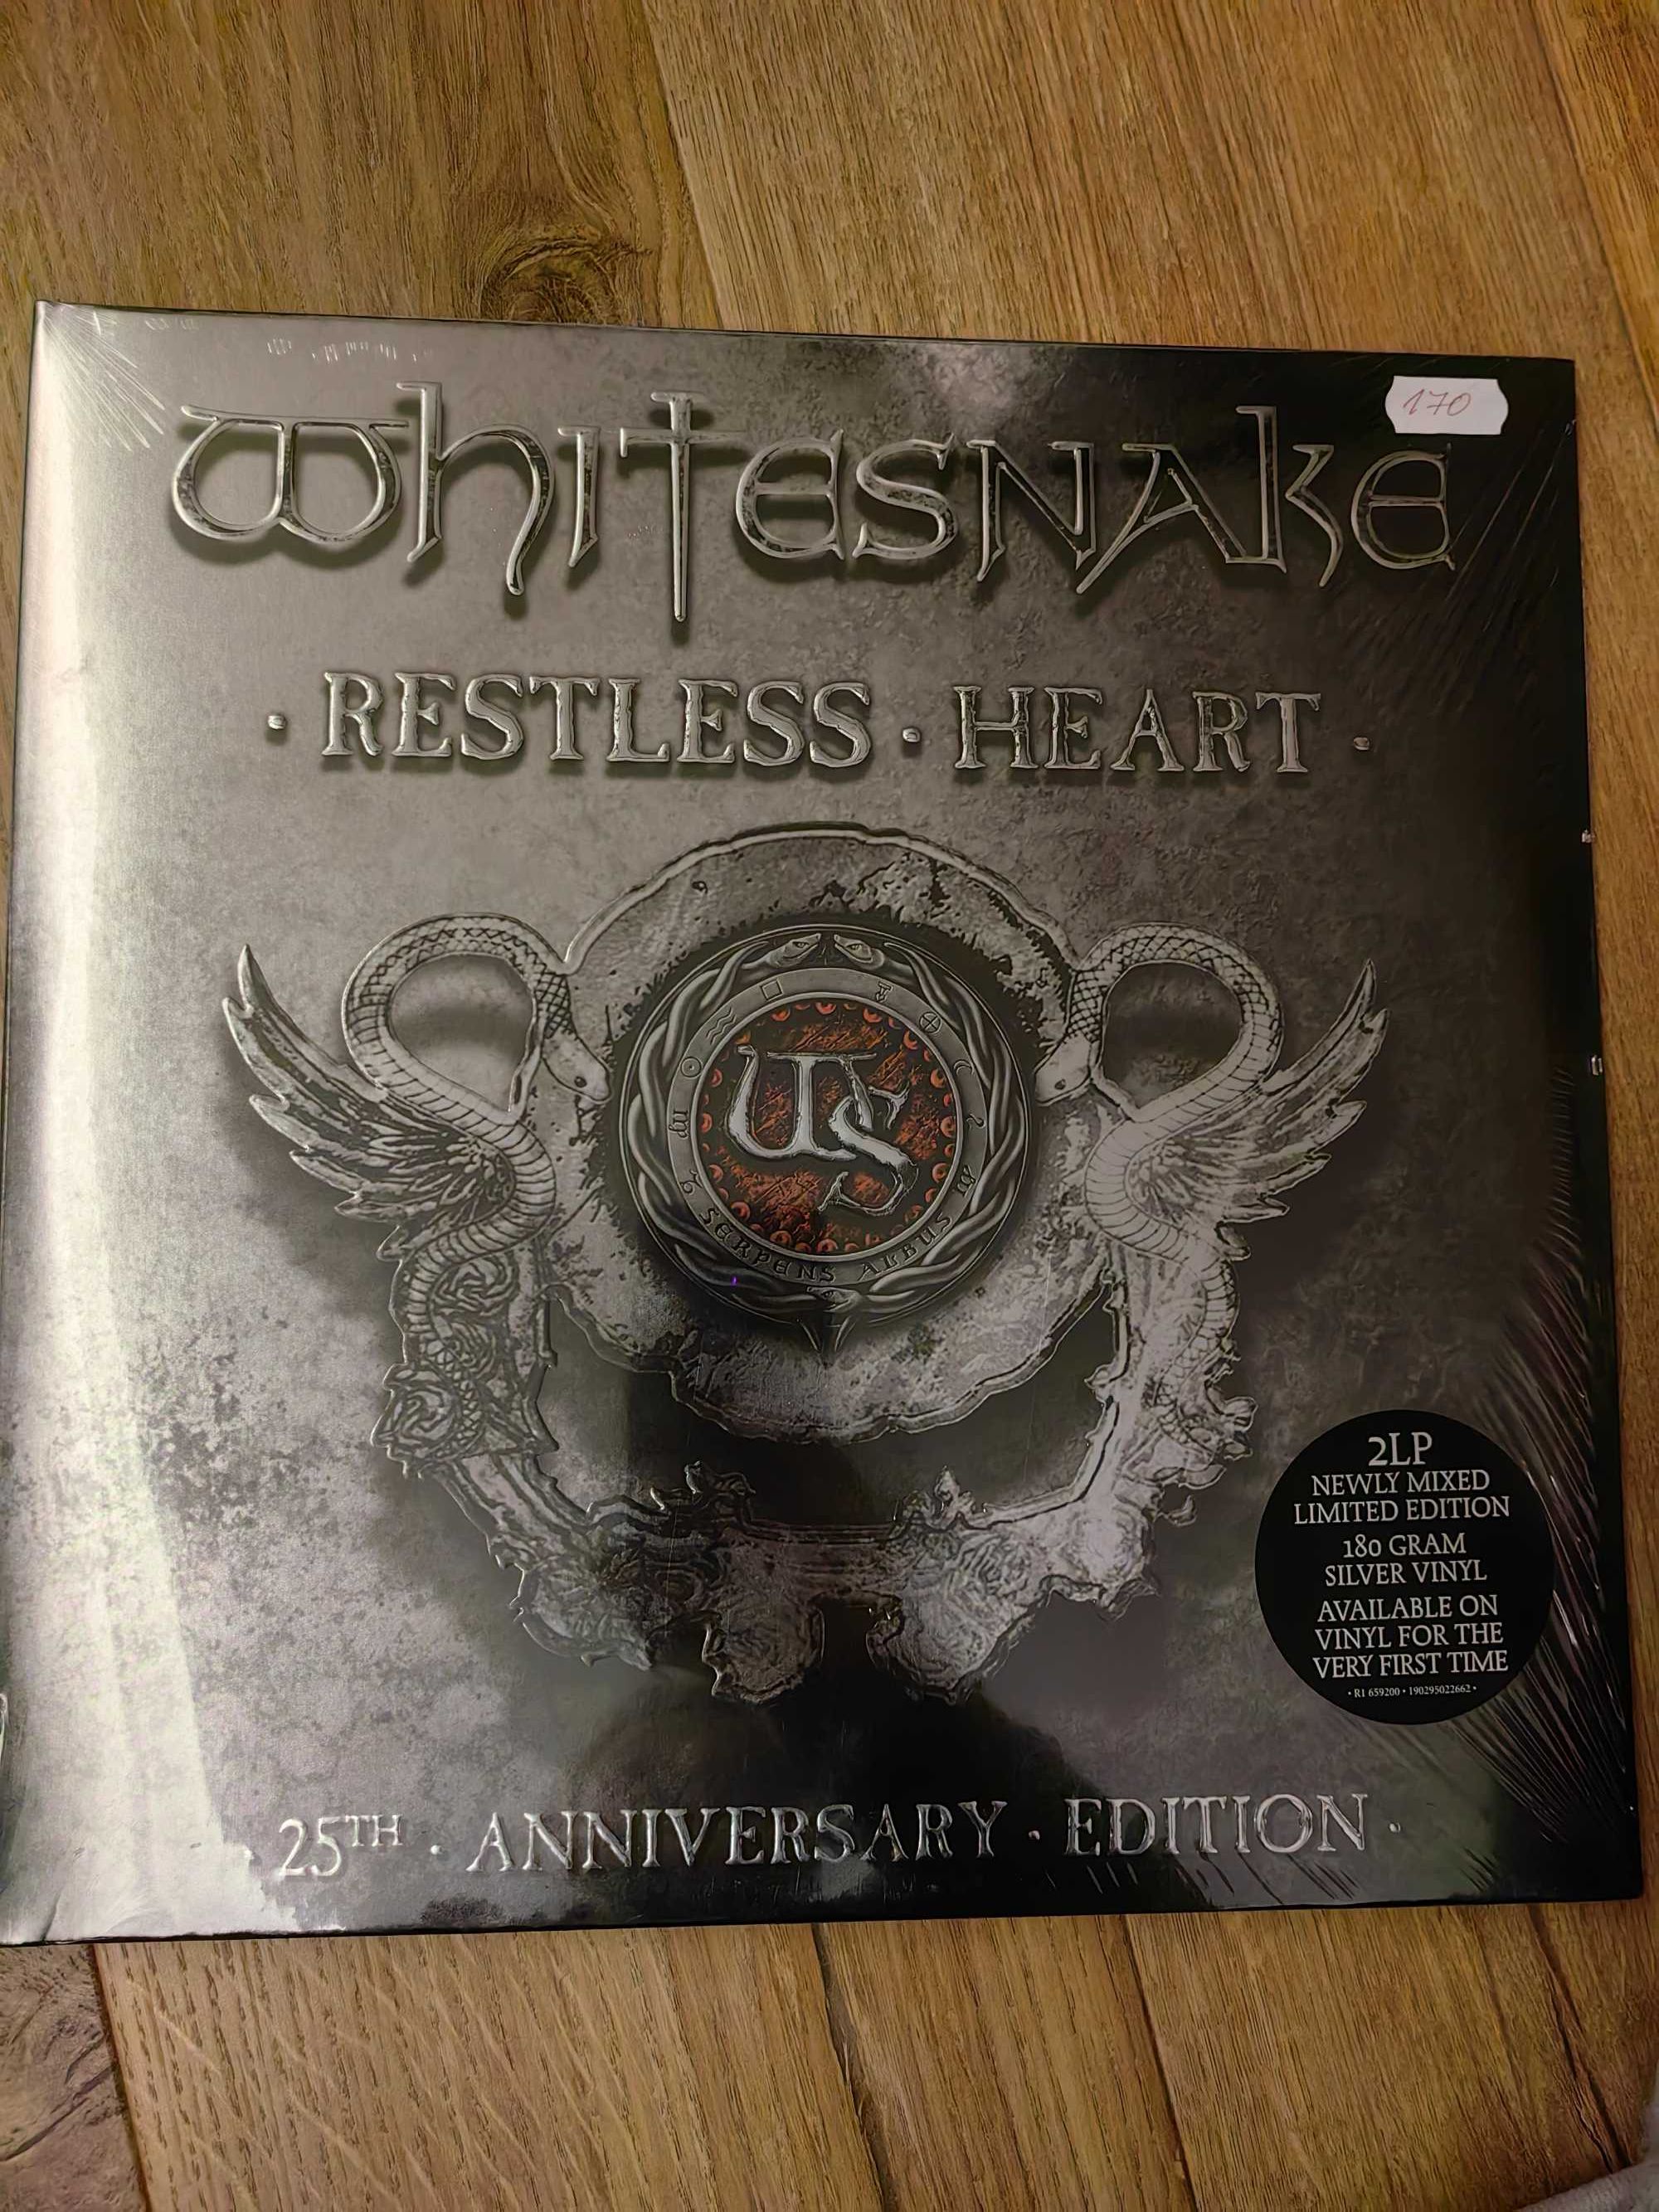 Whitesnake Restless Heart vinyl